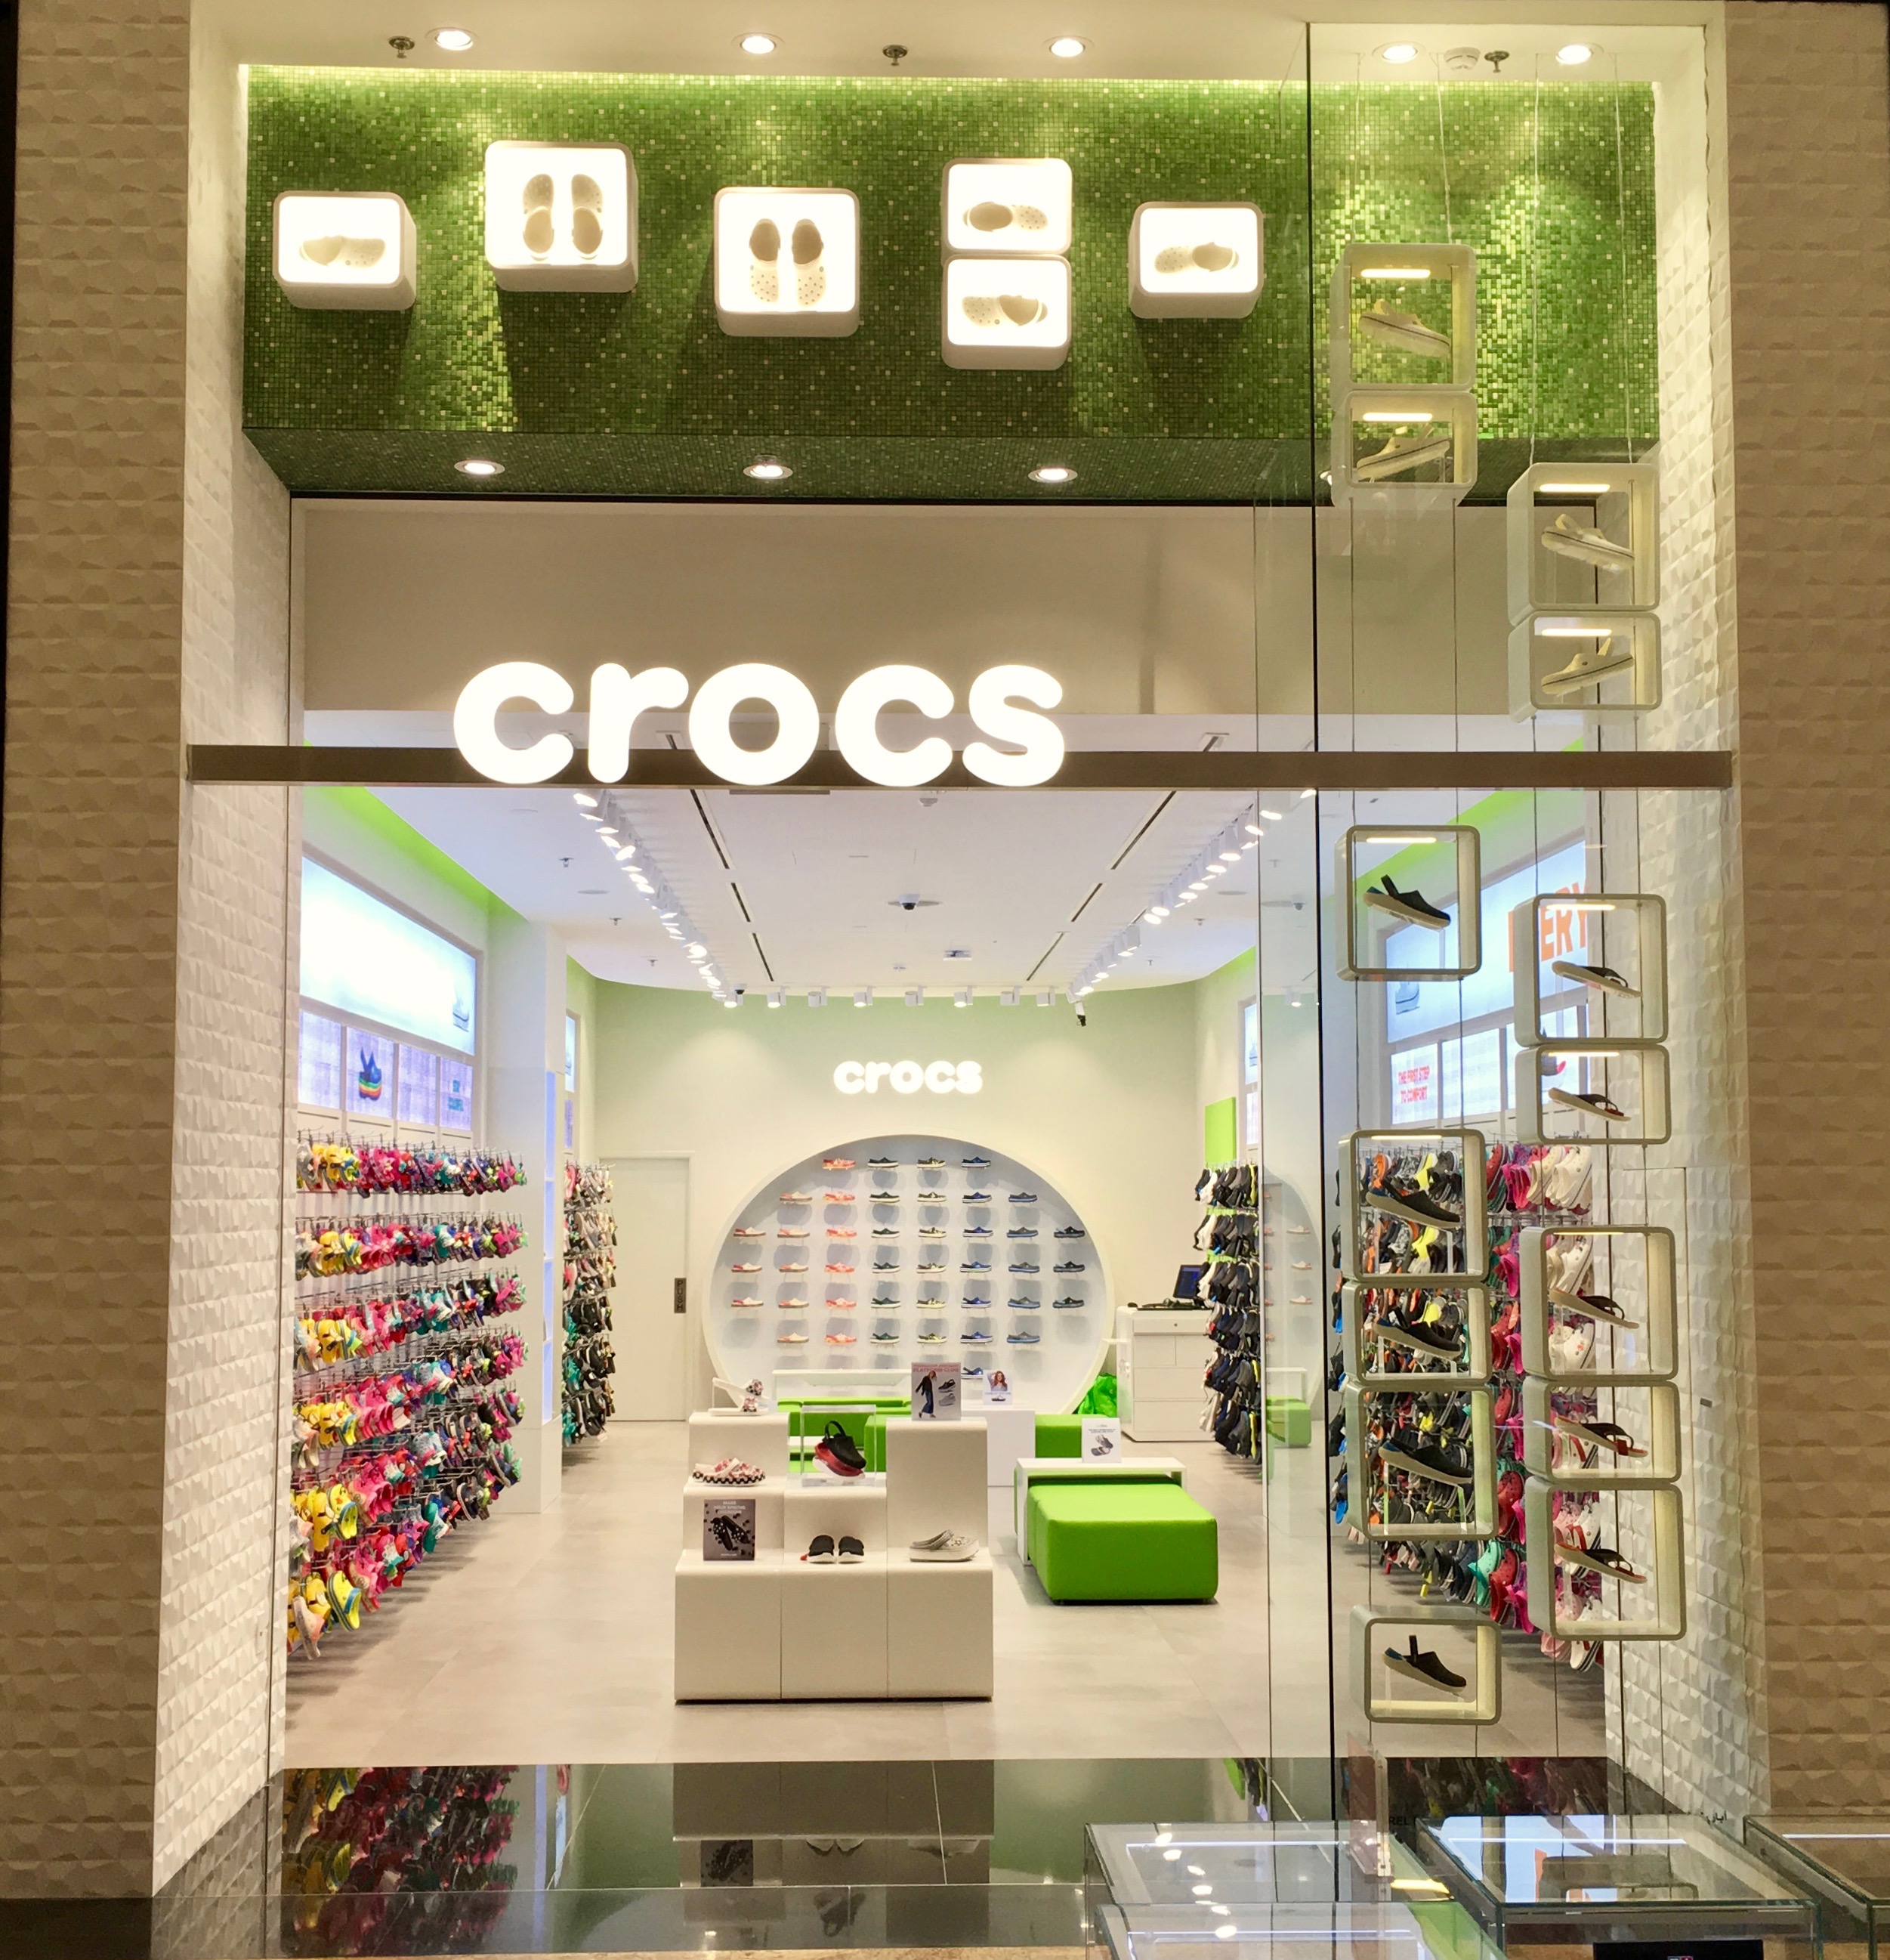 crossfit crocs